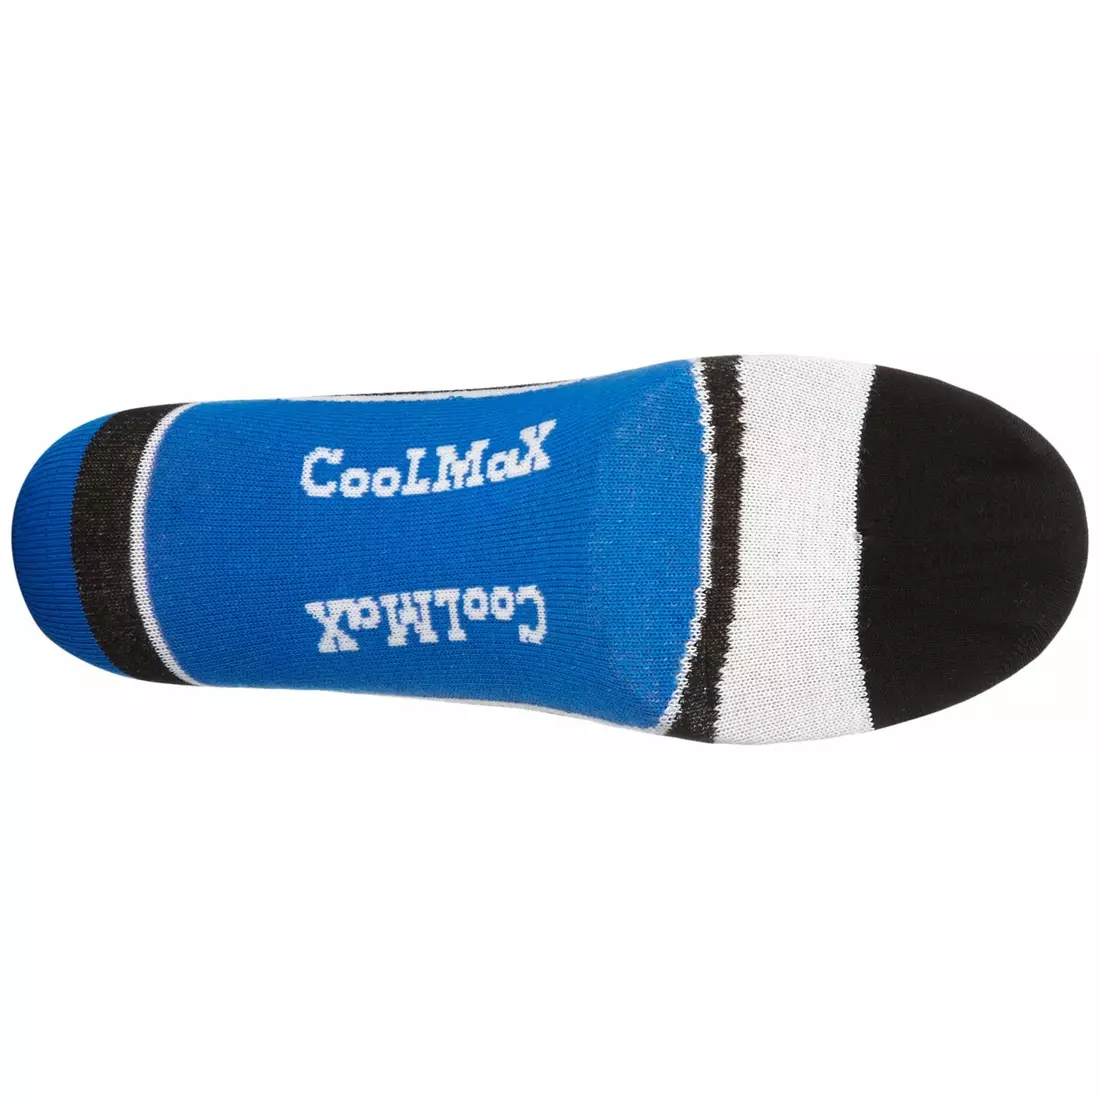 ROGELLI RCS-03 - COOLMAX - cyklistické ponožky, modré